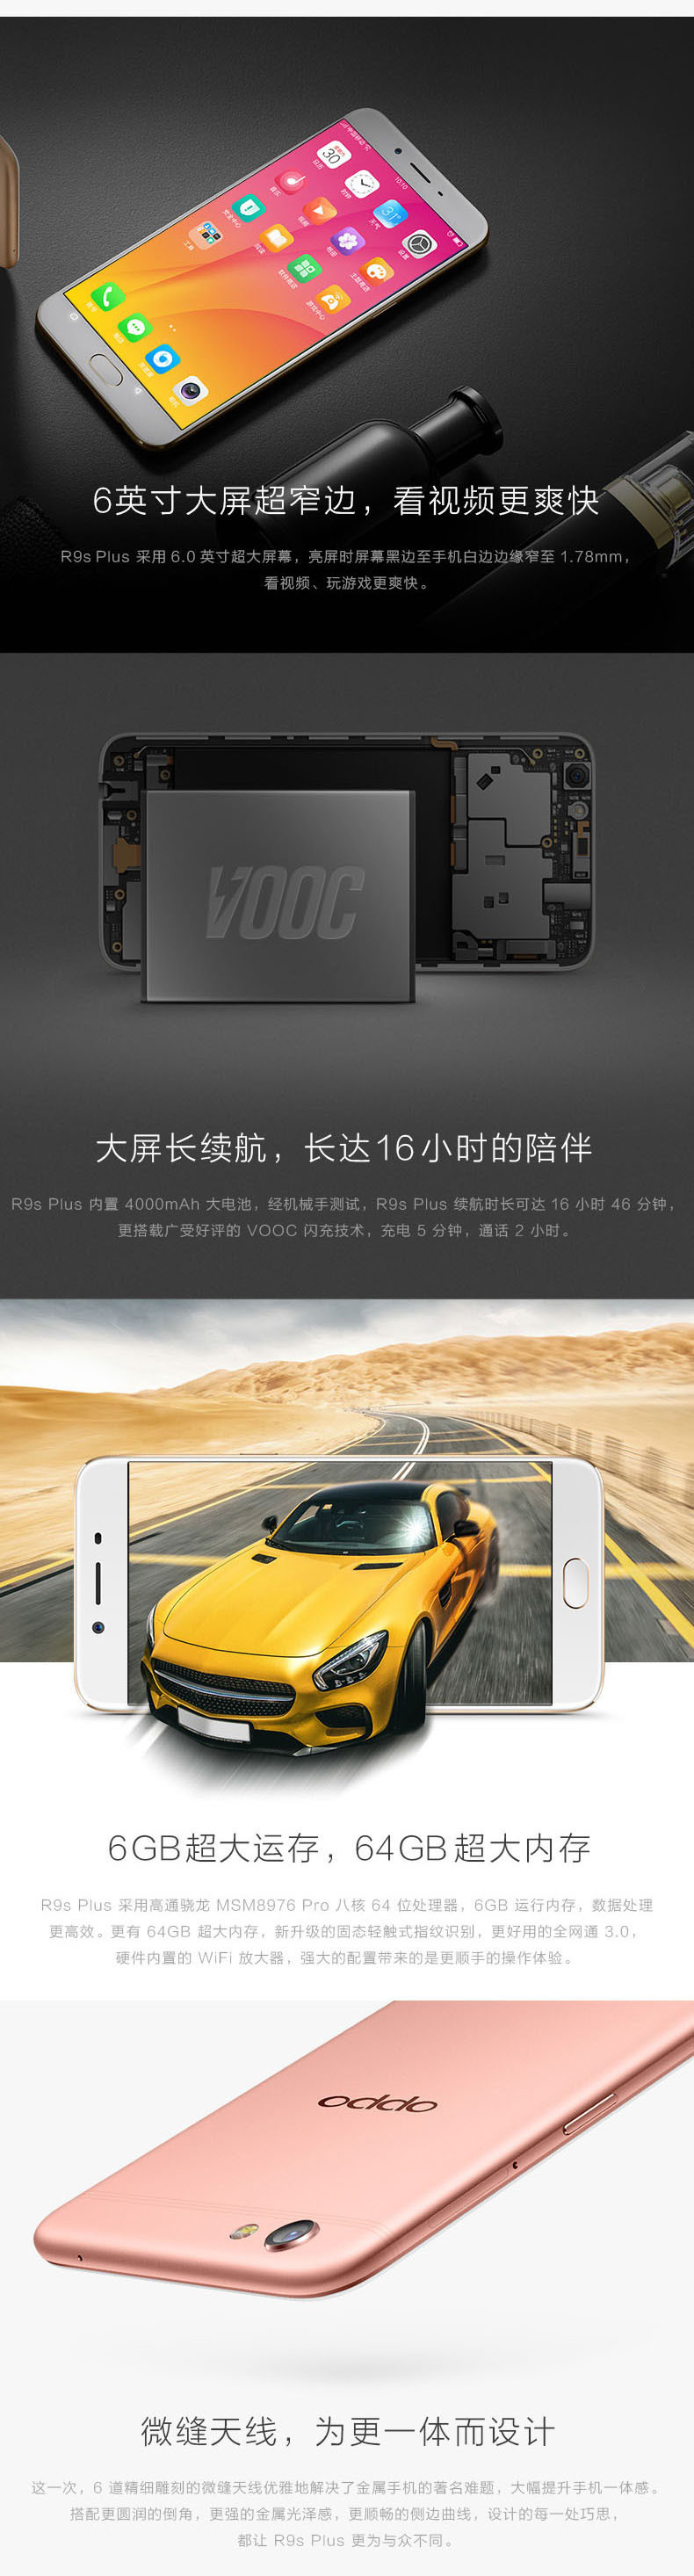 【湖南馆】OPPO R9s Plus 6GB+64GB内存版 全网通4G手机 双卡双待 黑色